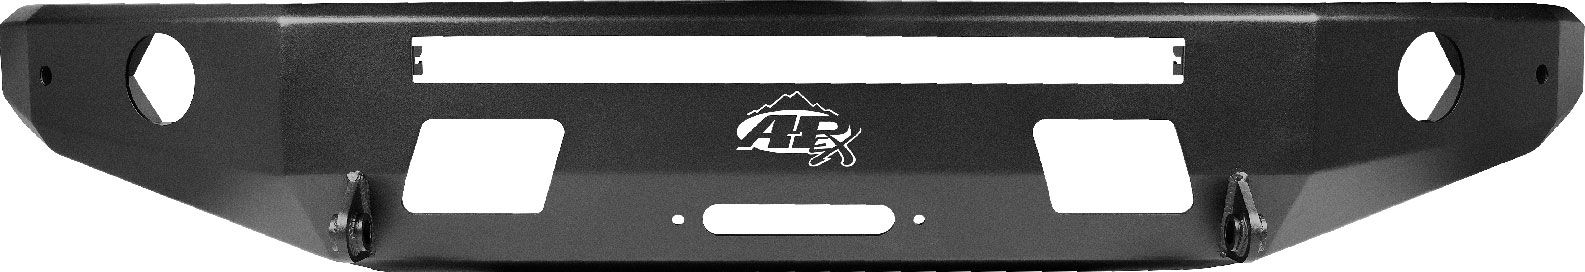 All-Pro Off-Road 3rd Gen Front Aluminum Apex Bumper in Black 2014+